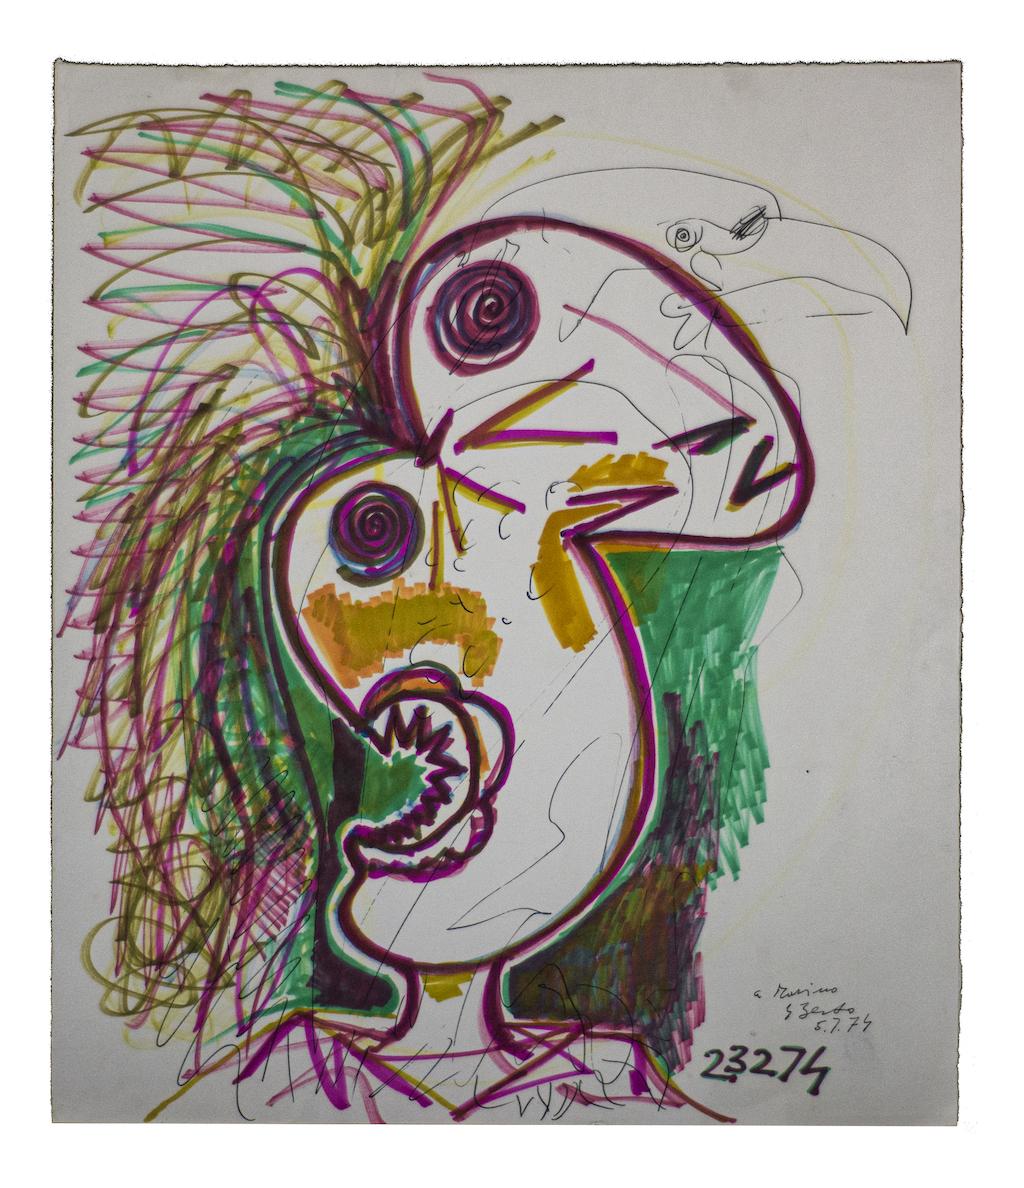 Bird-of-paradise -  Mixed-Media Drawing by Gianpaolo Berto - 1974